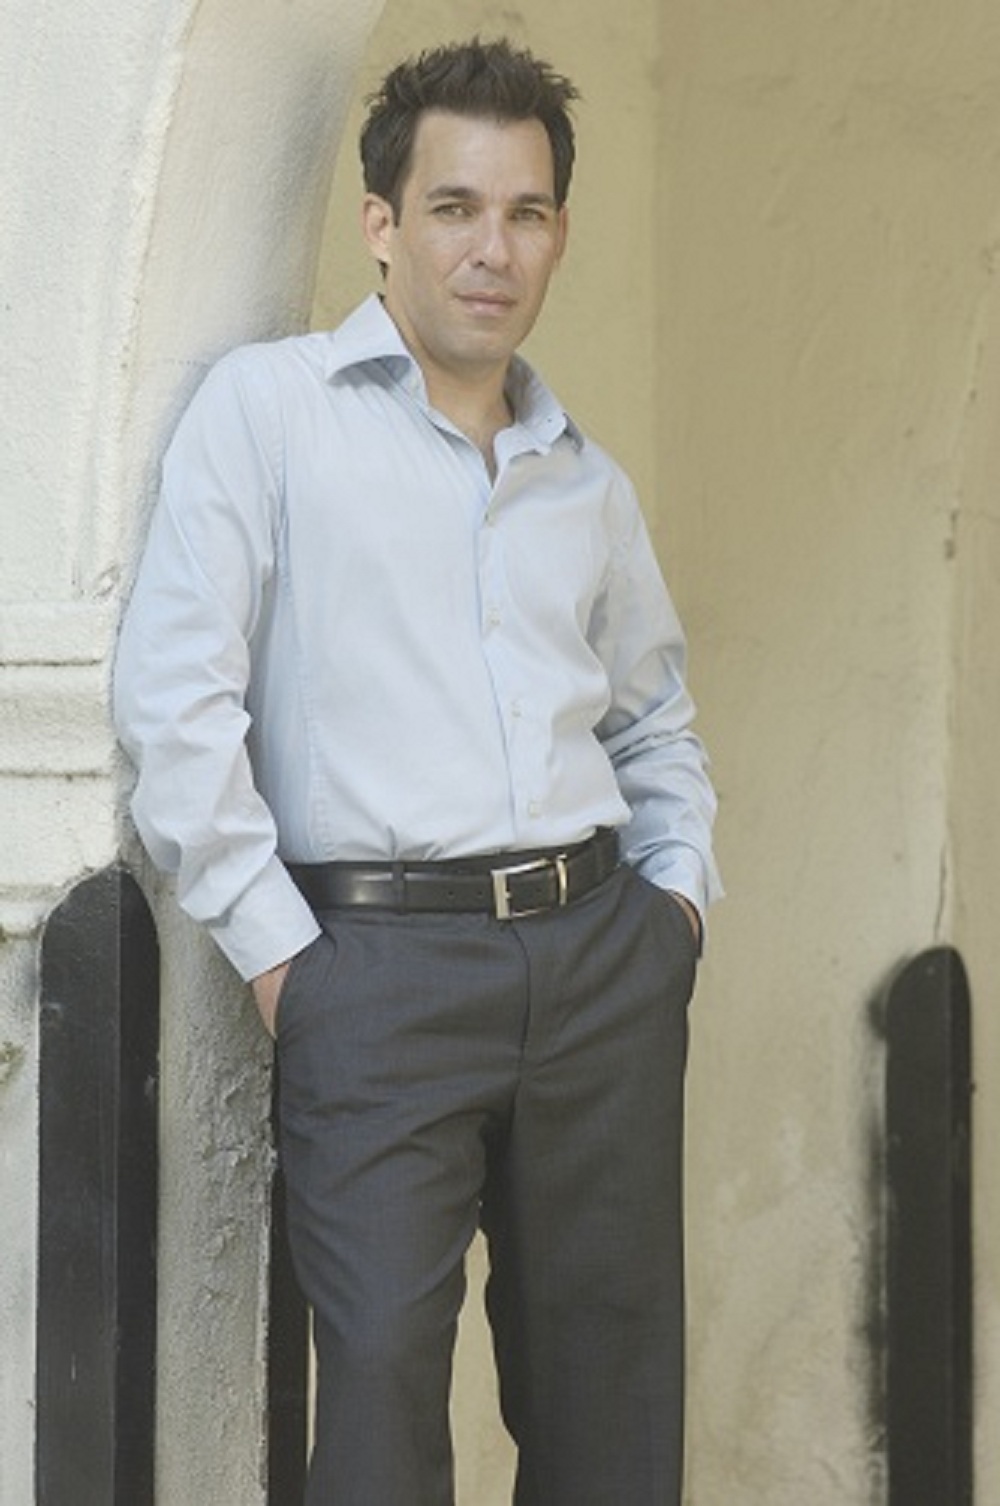 Jose Luis Munoz